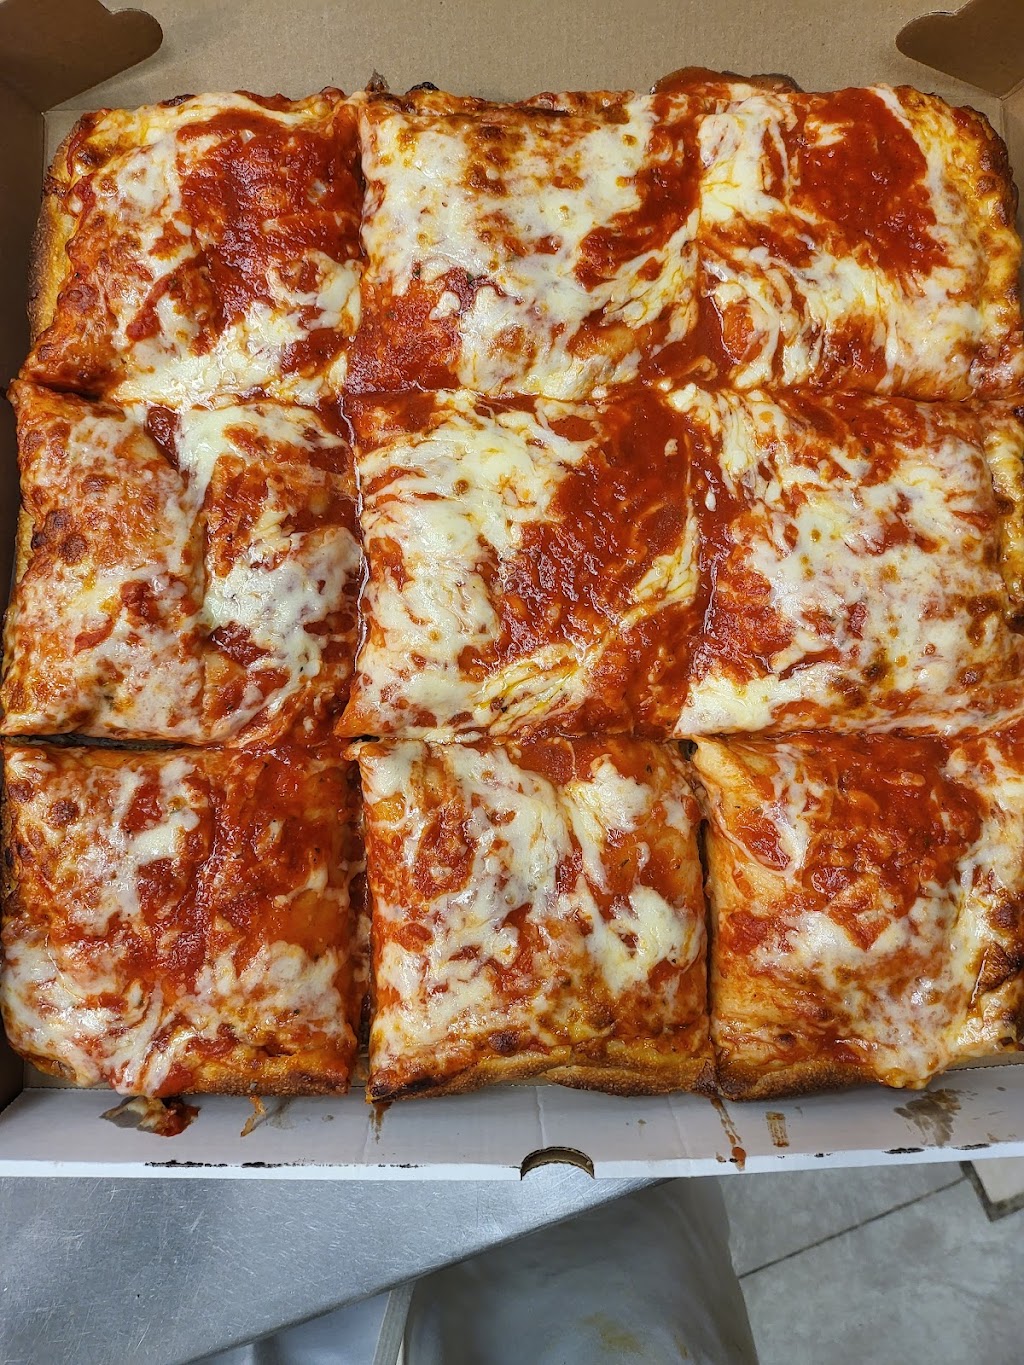 Italian Touch Pizza & Pasta | 1547 Arthur Kill Rd, Staten Island, NY 10312 | Phone: (718) 966-7200